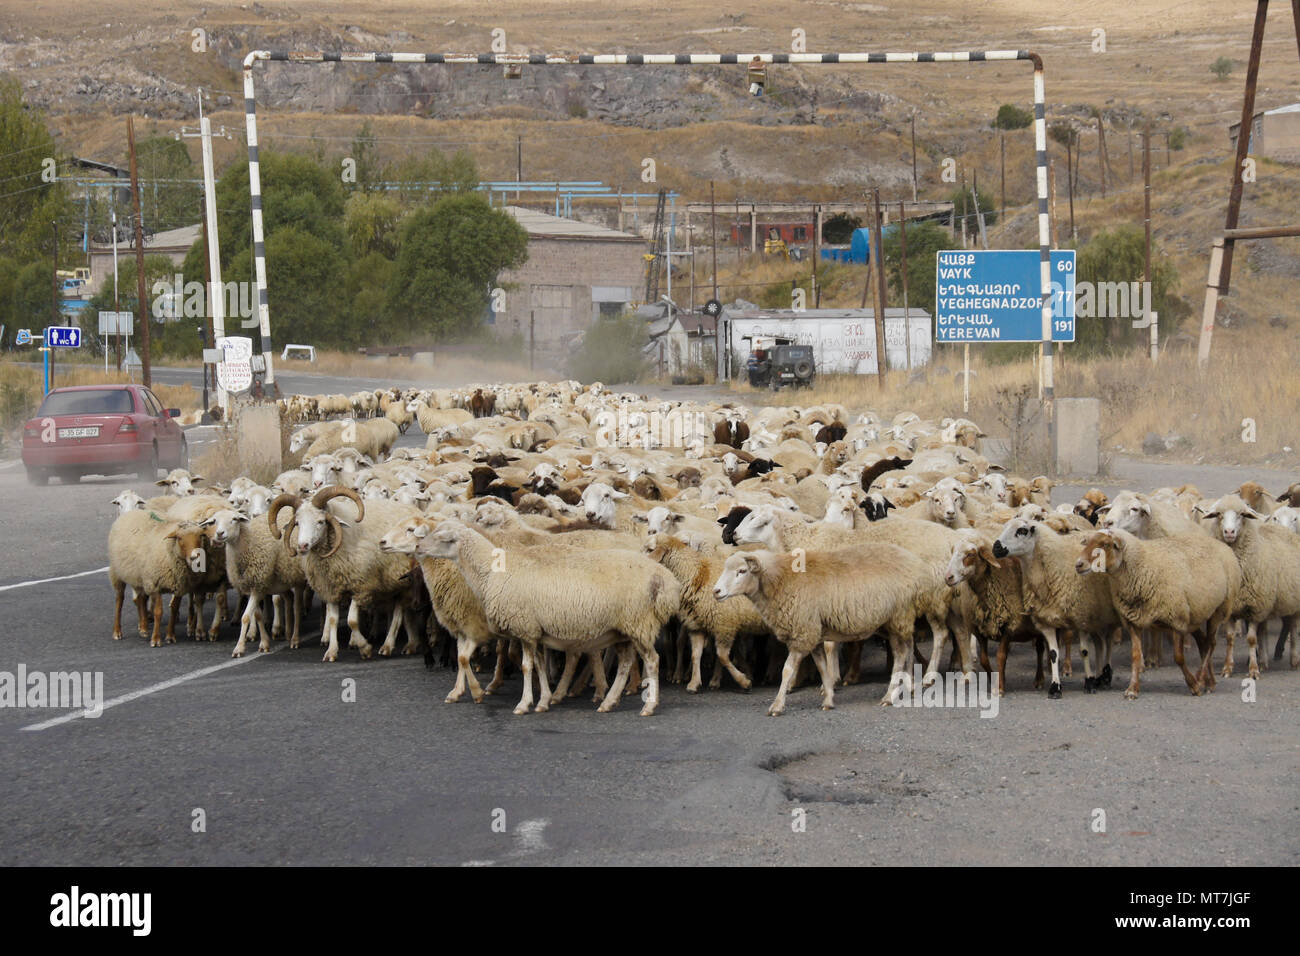 SISIAN, Armenia, 27 de septiembre de 2017. Un rebaño de ovejas paseos bajo un gasoducto y pasado un signo de distancia bilingües en la carretera a través de la ciudad. Foto de stock